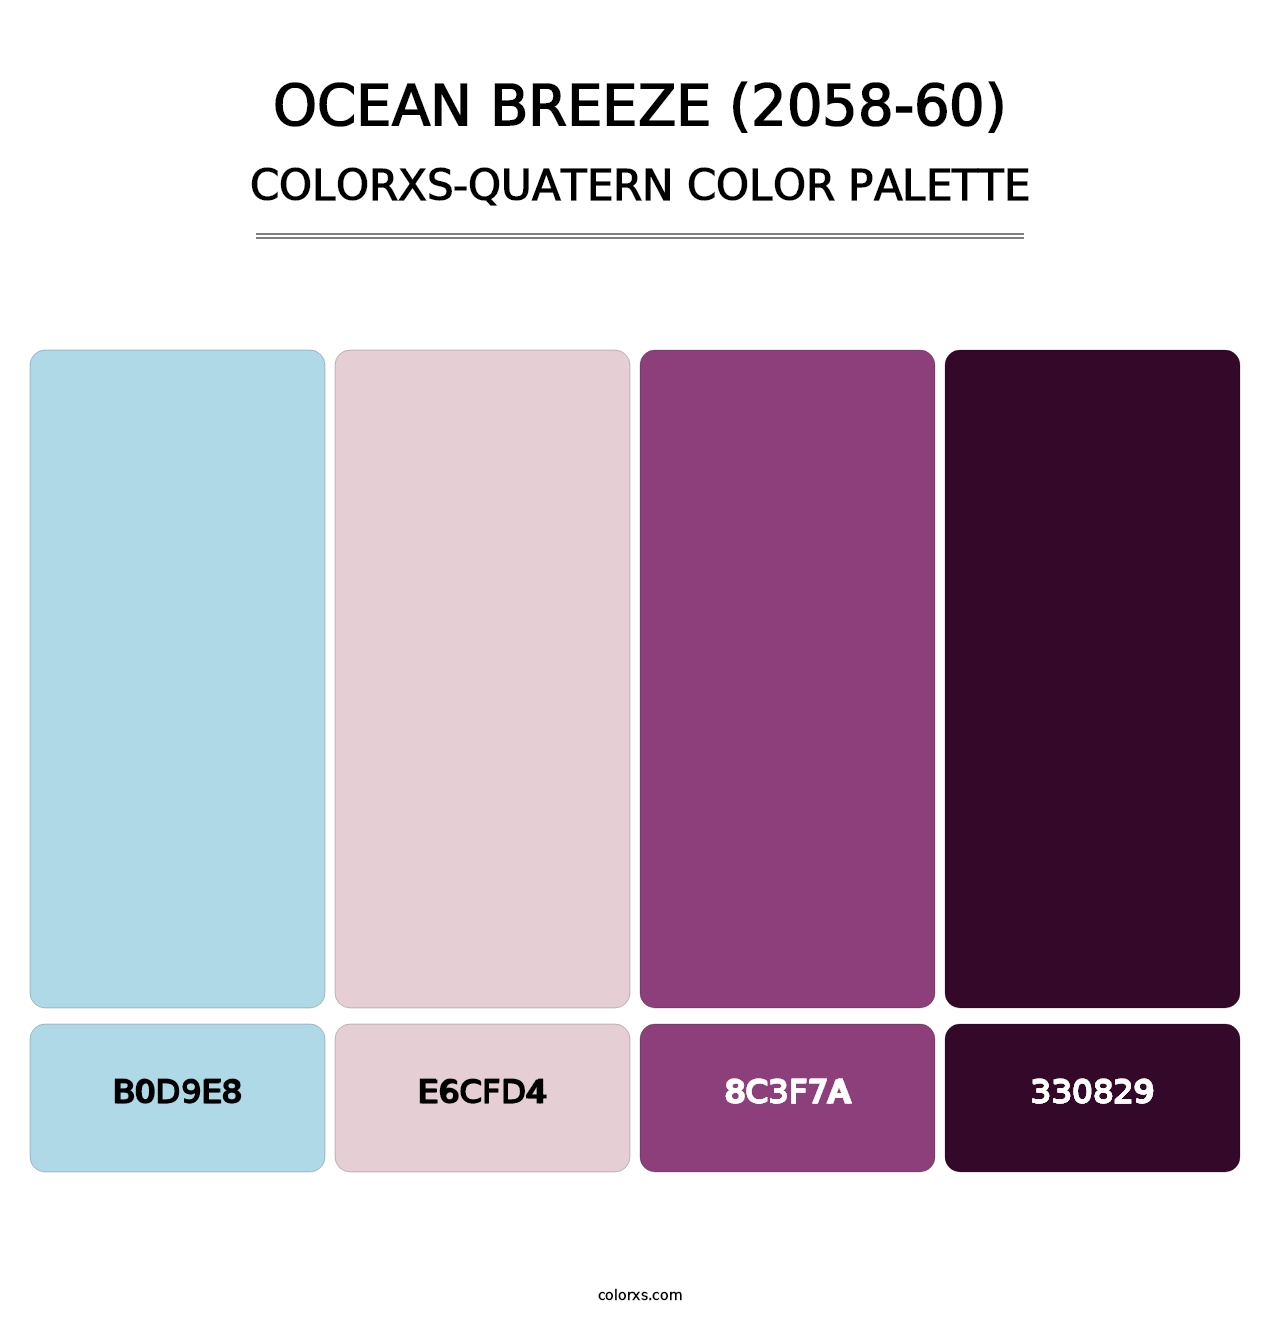 Ocean Breeze (2058-60) - Colorxs Quatern Palette